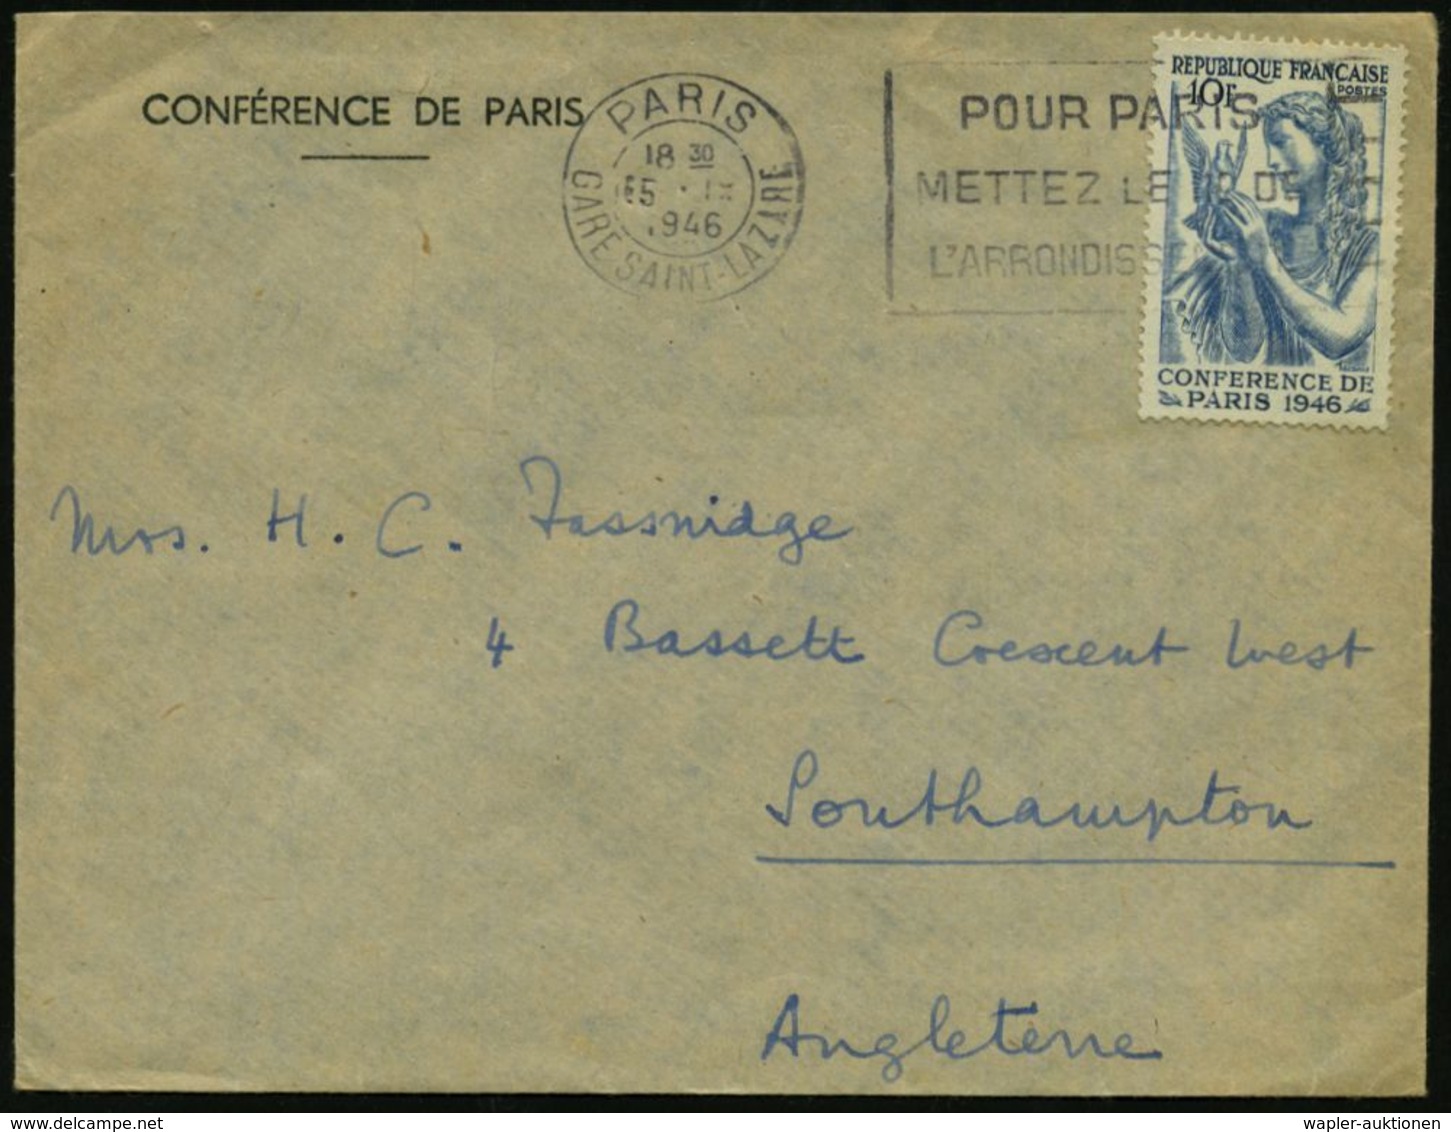 FRANKREICH 1946 (15.9.) 10 F. Friedenskonferenz, EF (Frau Mit Taube) Passender, Amtl. Dienst-Ausl.-Bf.: CONFERENCE DE PA - VN